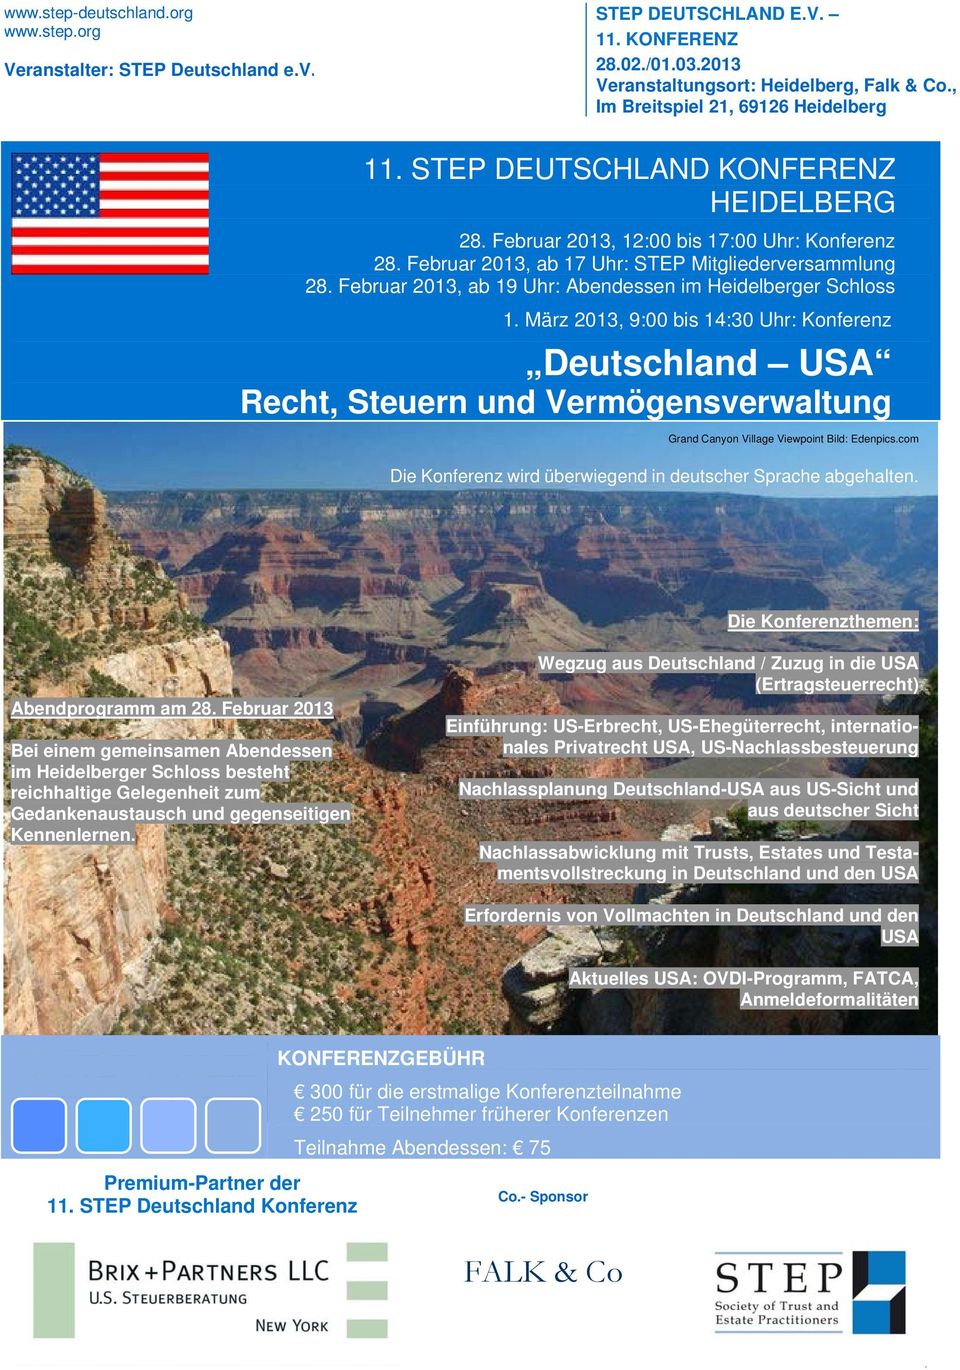 Februar 2013, ab 19 Uhr: Abendessen im Heidelberger Schloss 1. März 2013, 9:00 bis 14:30 Uhr: Konferenz Grand Canyon Village Viewpoint Bild: Edenpics.